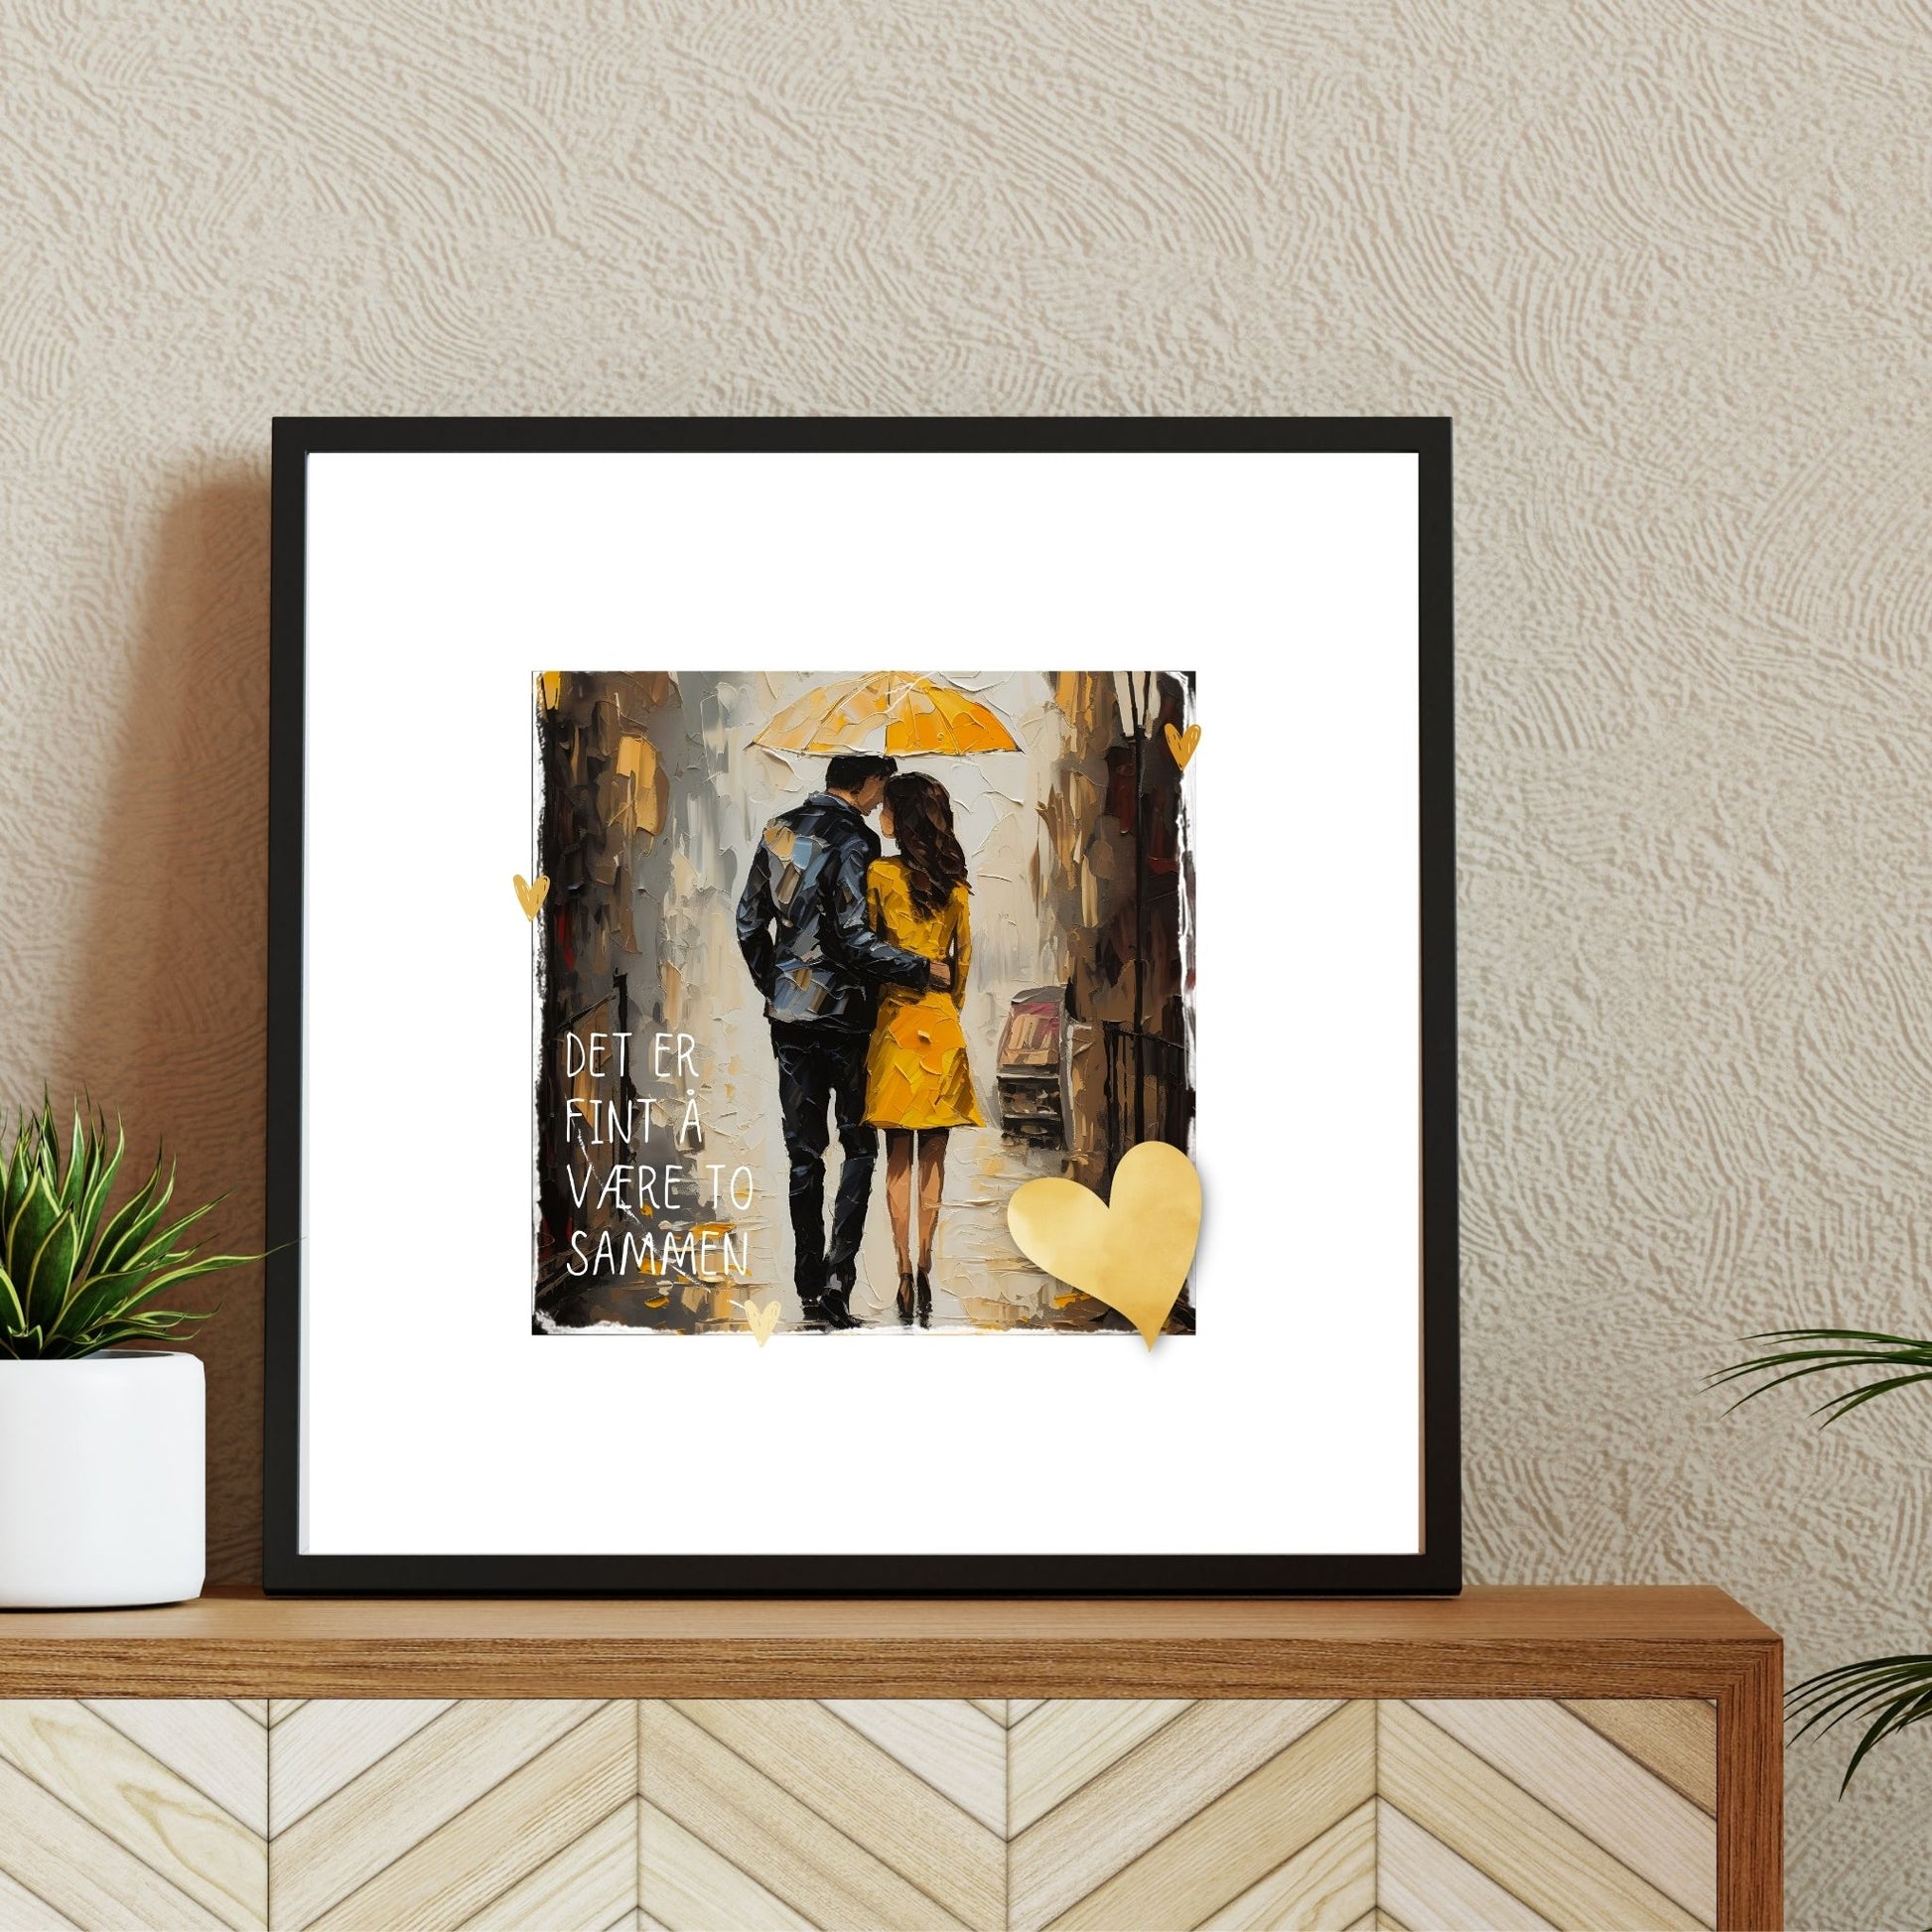 Plakat med lysegult hjerte og tekst "Det er fint å være to sammen" - og et motiv med et kjærestepar som går under en gul paraply. Bildet har en hvit kant på 4 cm. Illustrasjon viser plakat i ramme.